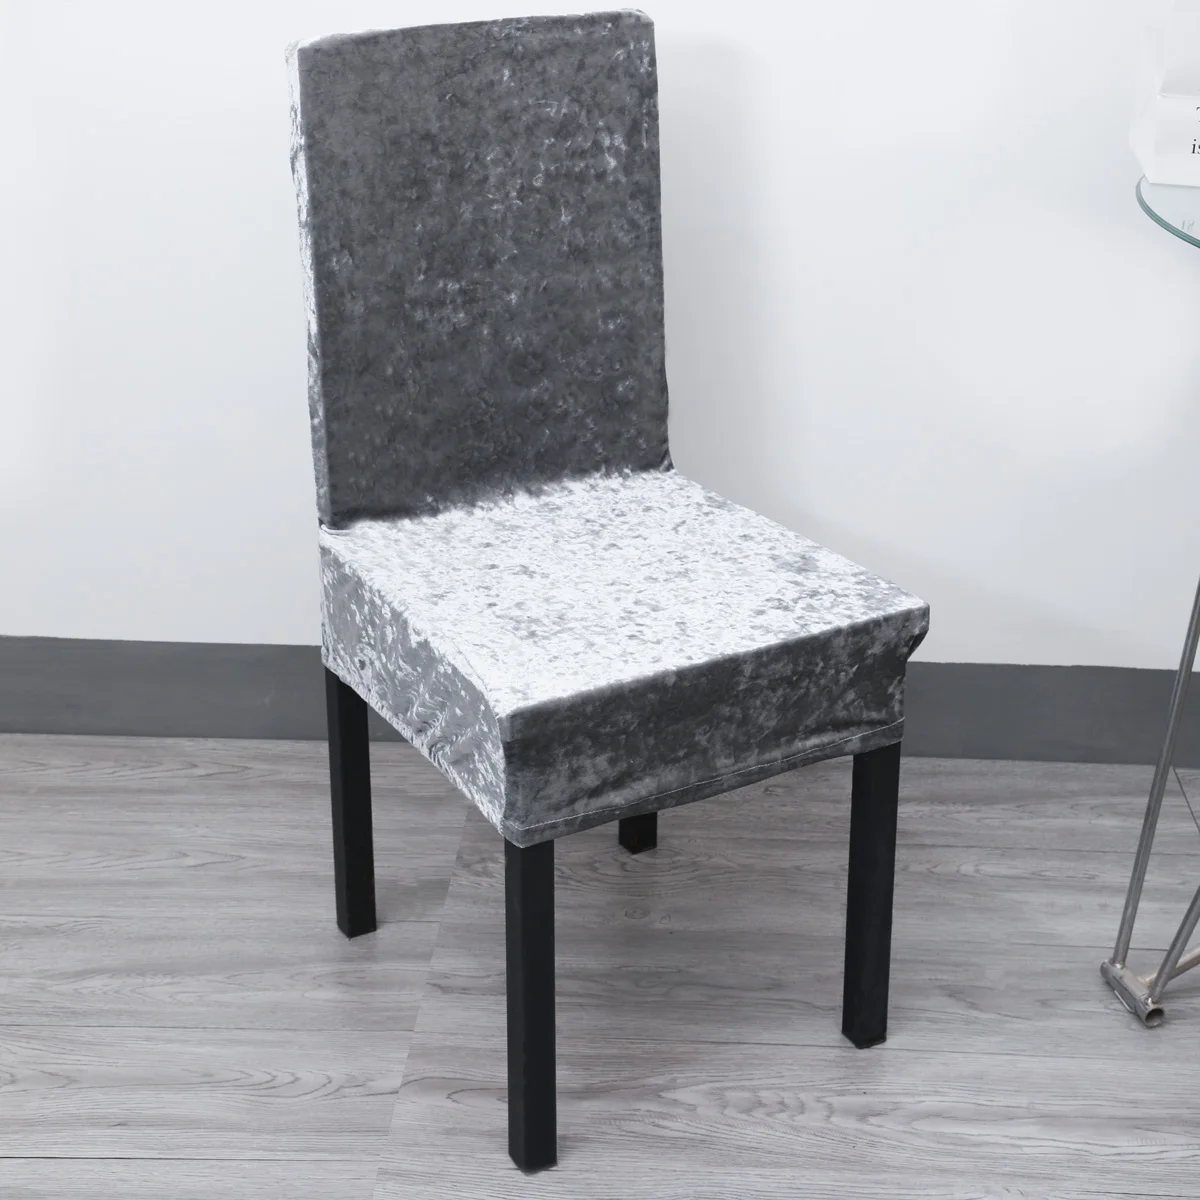 Сплошной цвет серый раздавленный бархат тканевый чехол на стулья бархат толстое сидение чехол для столовой свадьбы офиса банкета чехол для кресла